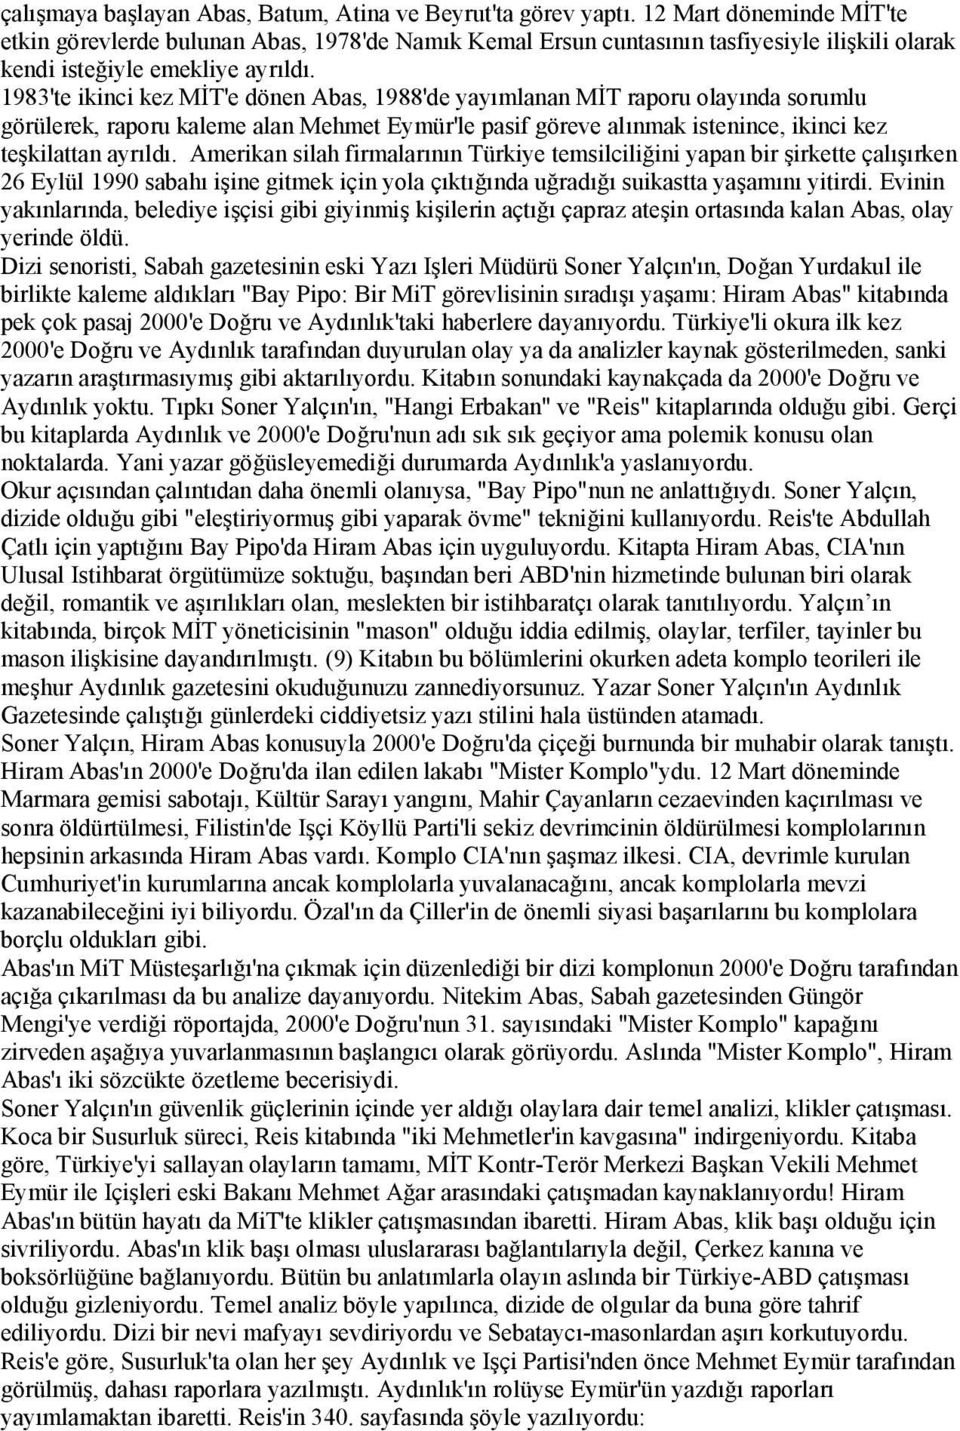 1983'te ikinci kez MİT'e dönen Abas, 1988'de yayımlanan MİT raporu olayında sorumlu görülerek, raporu kaleme alan Mehmet Eymür'le pasif göreve alınmak istenince, ikinci kez teşkilattan ayrıldı.